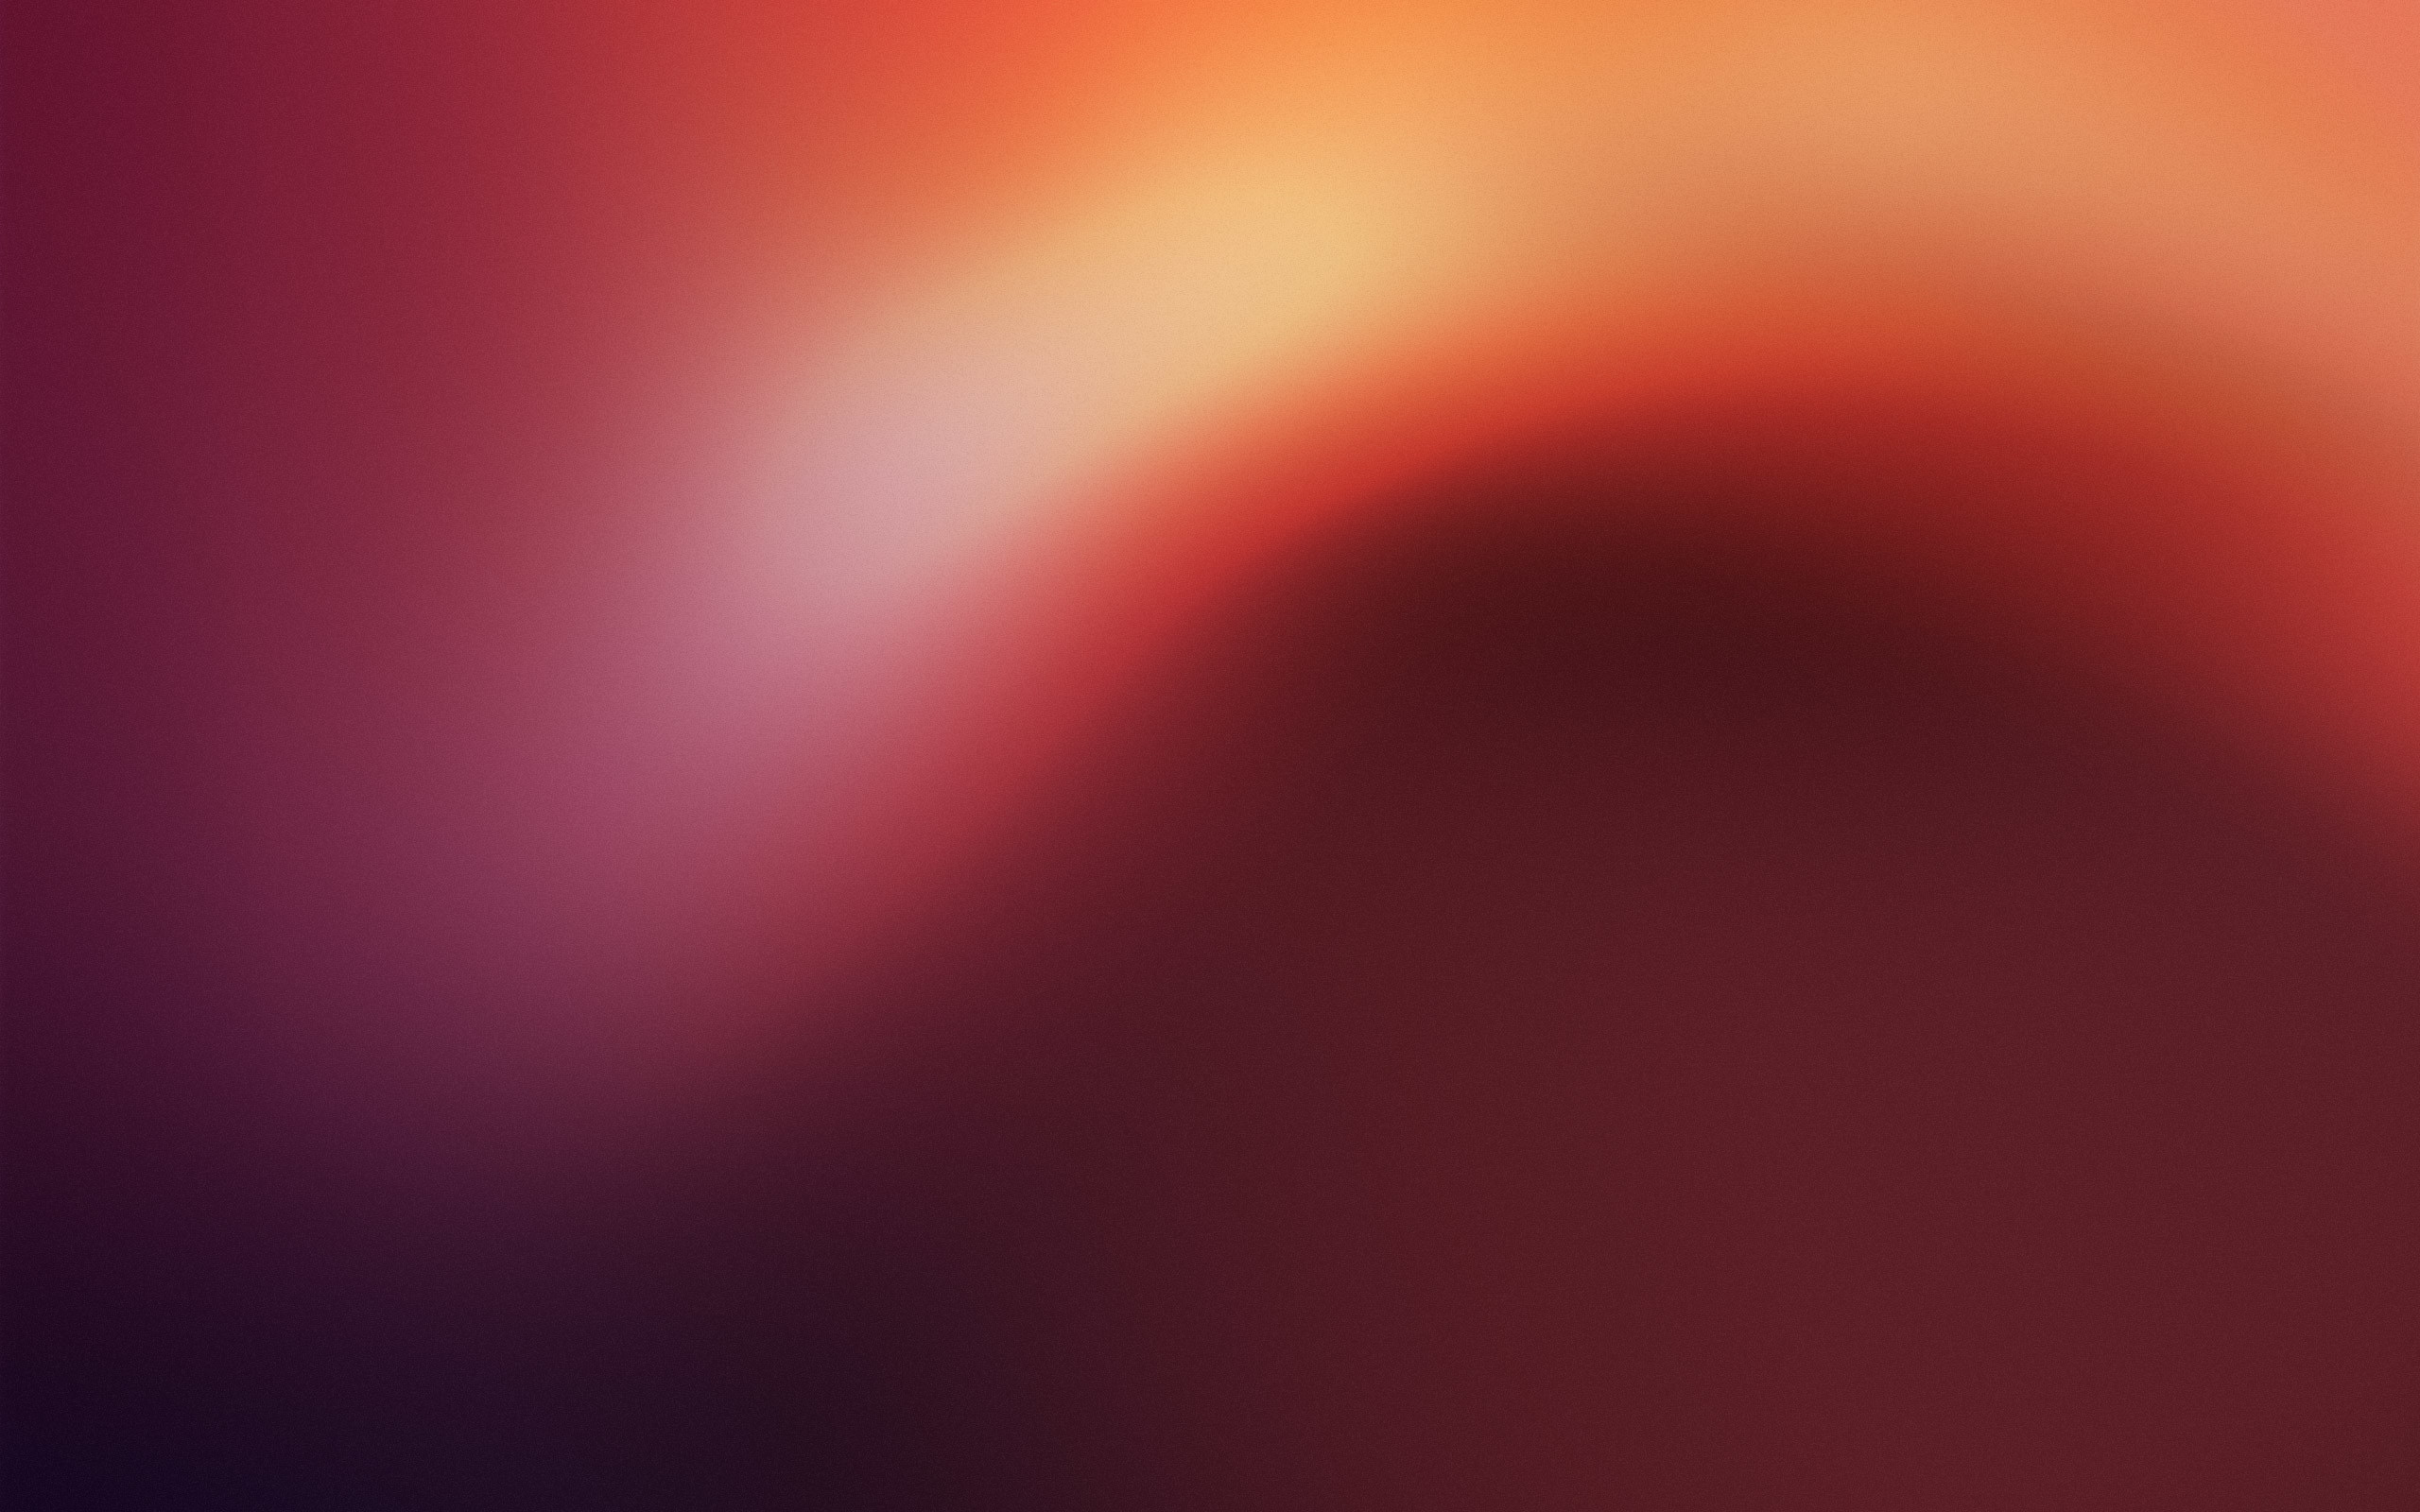 Ubuntu 1304 Raring Ringtail official wallpaper released 2buntu 2560x1600